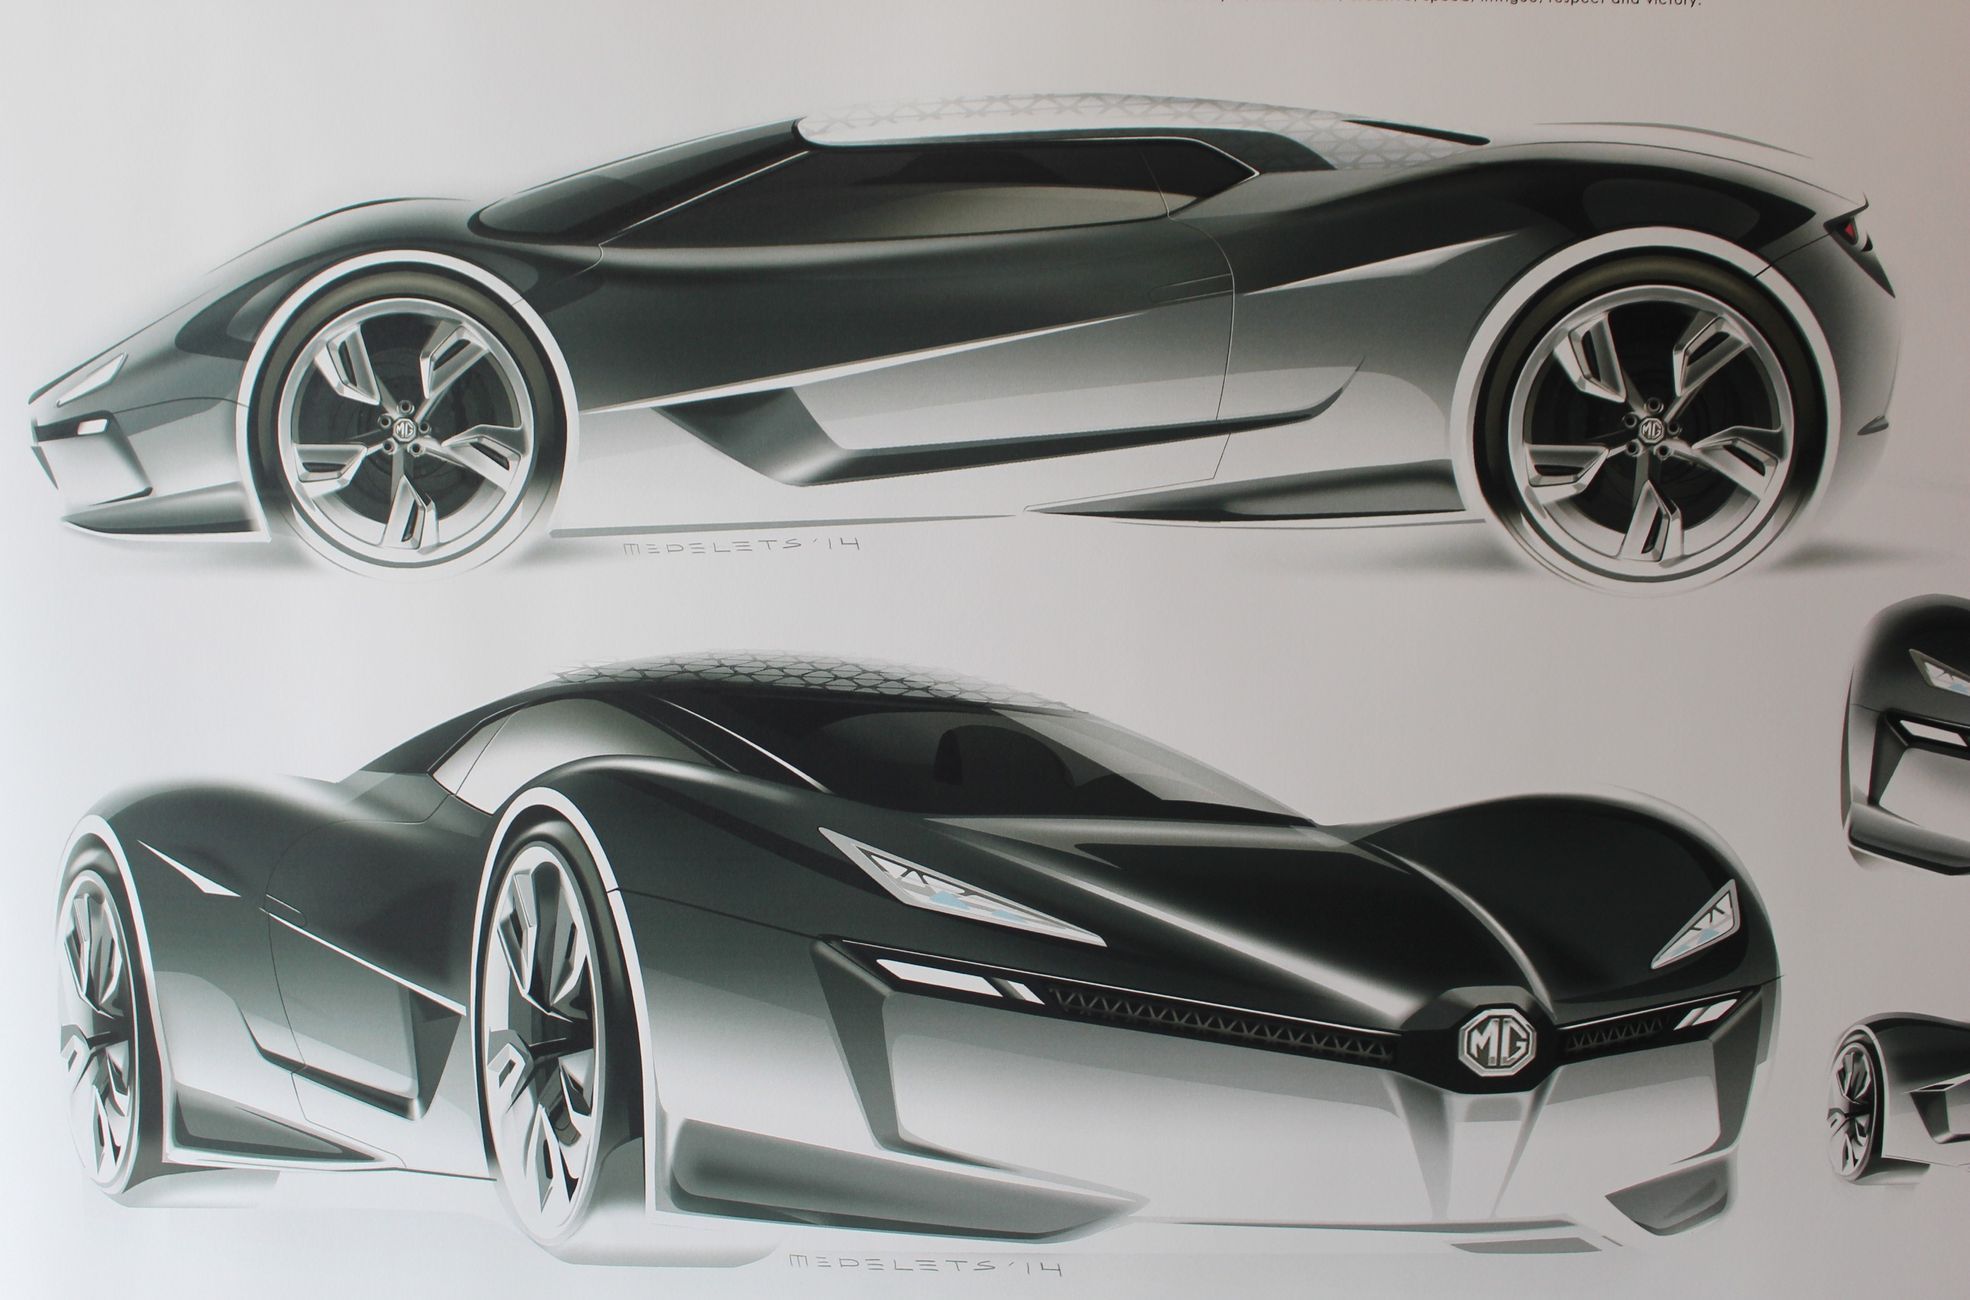 MG - Výstava studentského automobilového designu